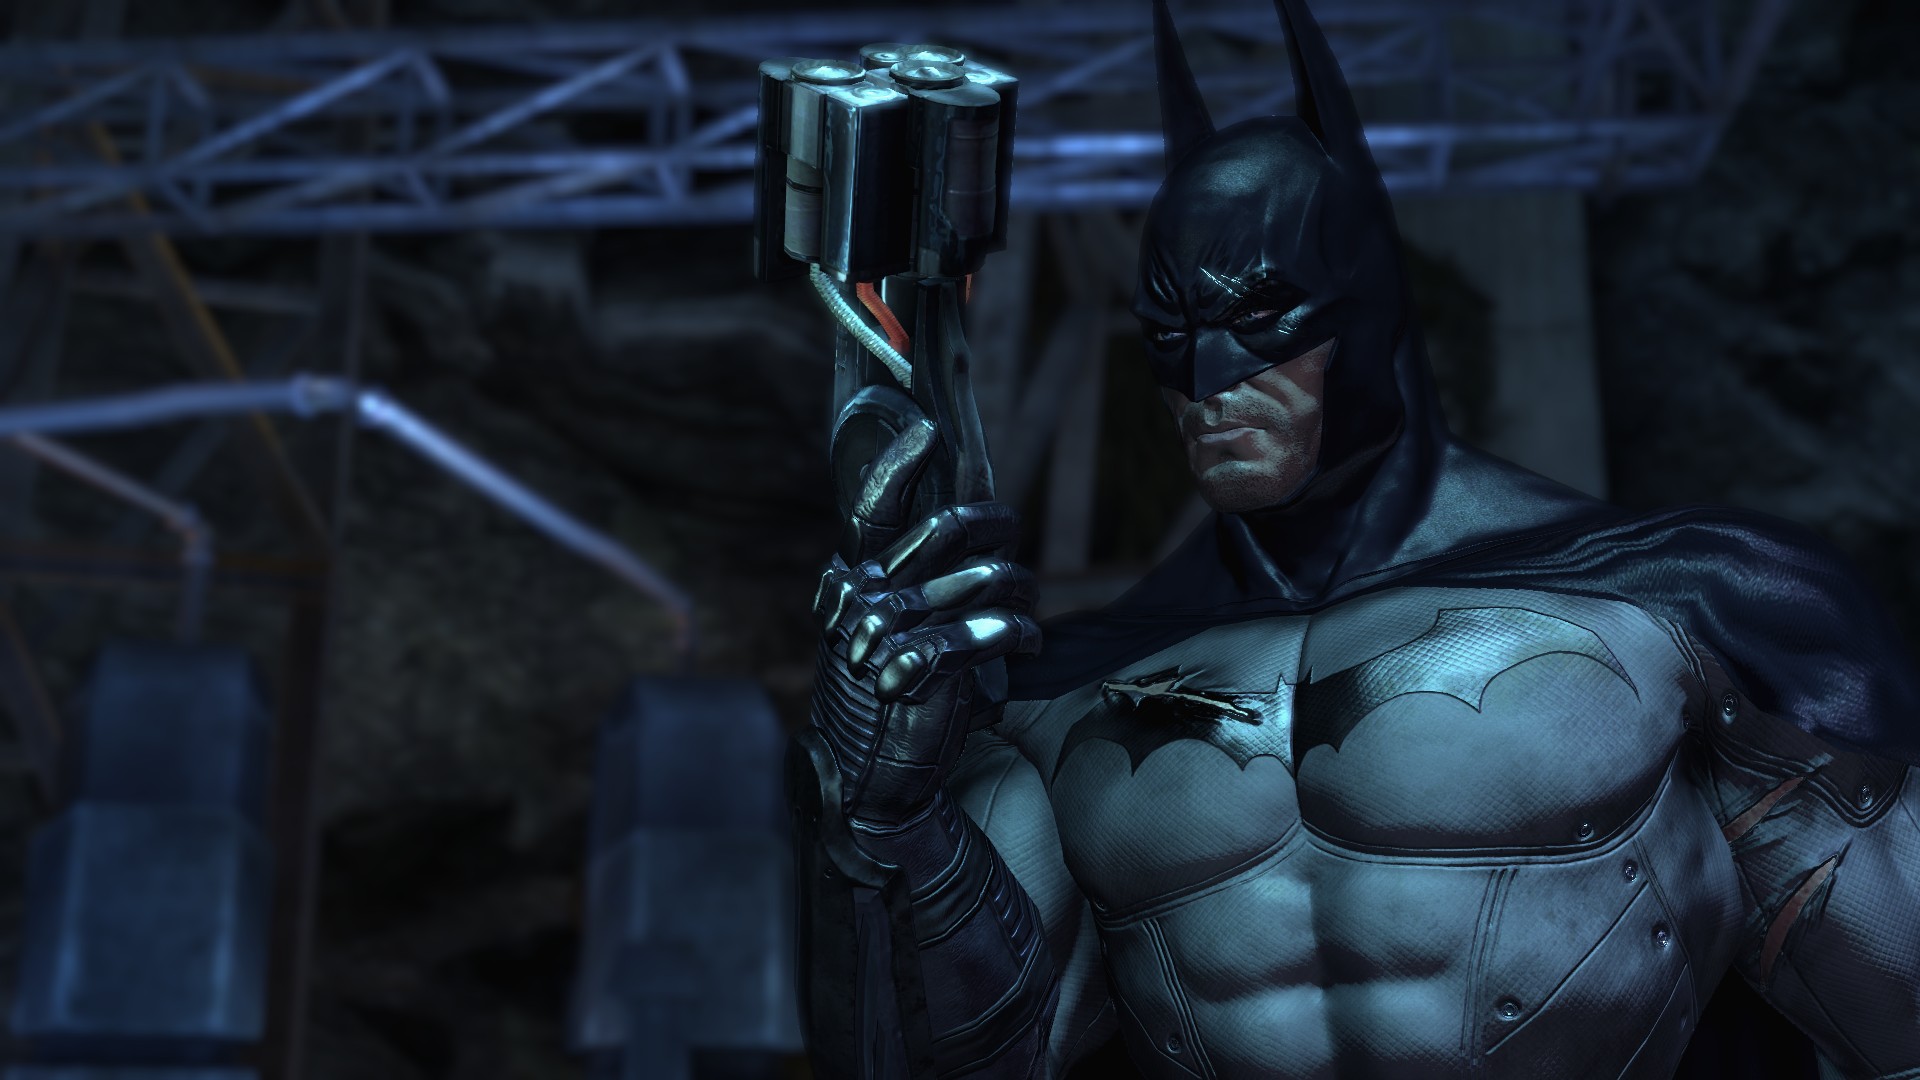 Скачать обои бесплатно Видеоигры, Бэтмен, Бэтмен: Лечебница Аркхема картинка на рабочий стол ПК